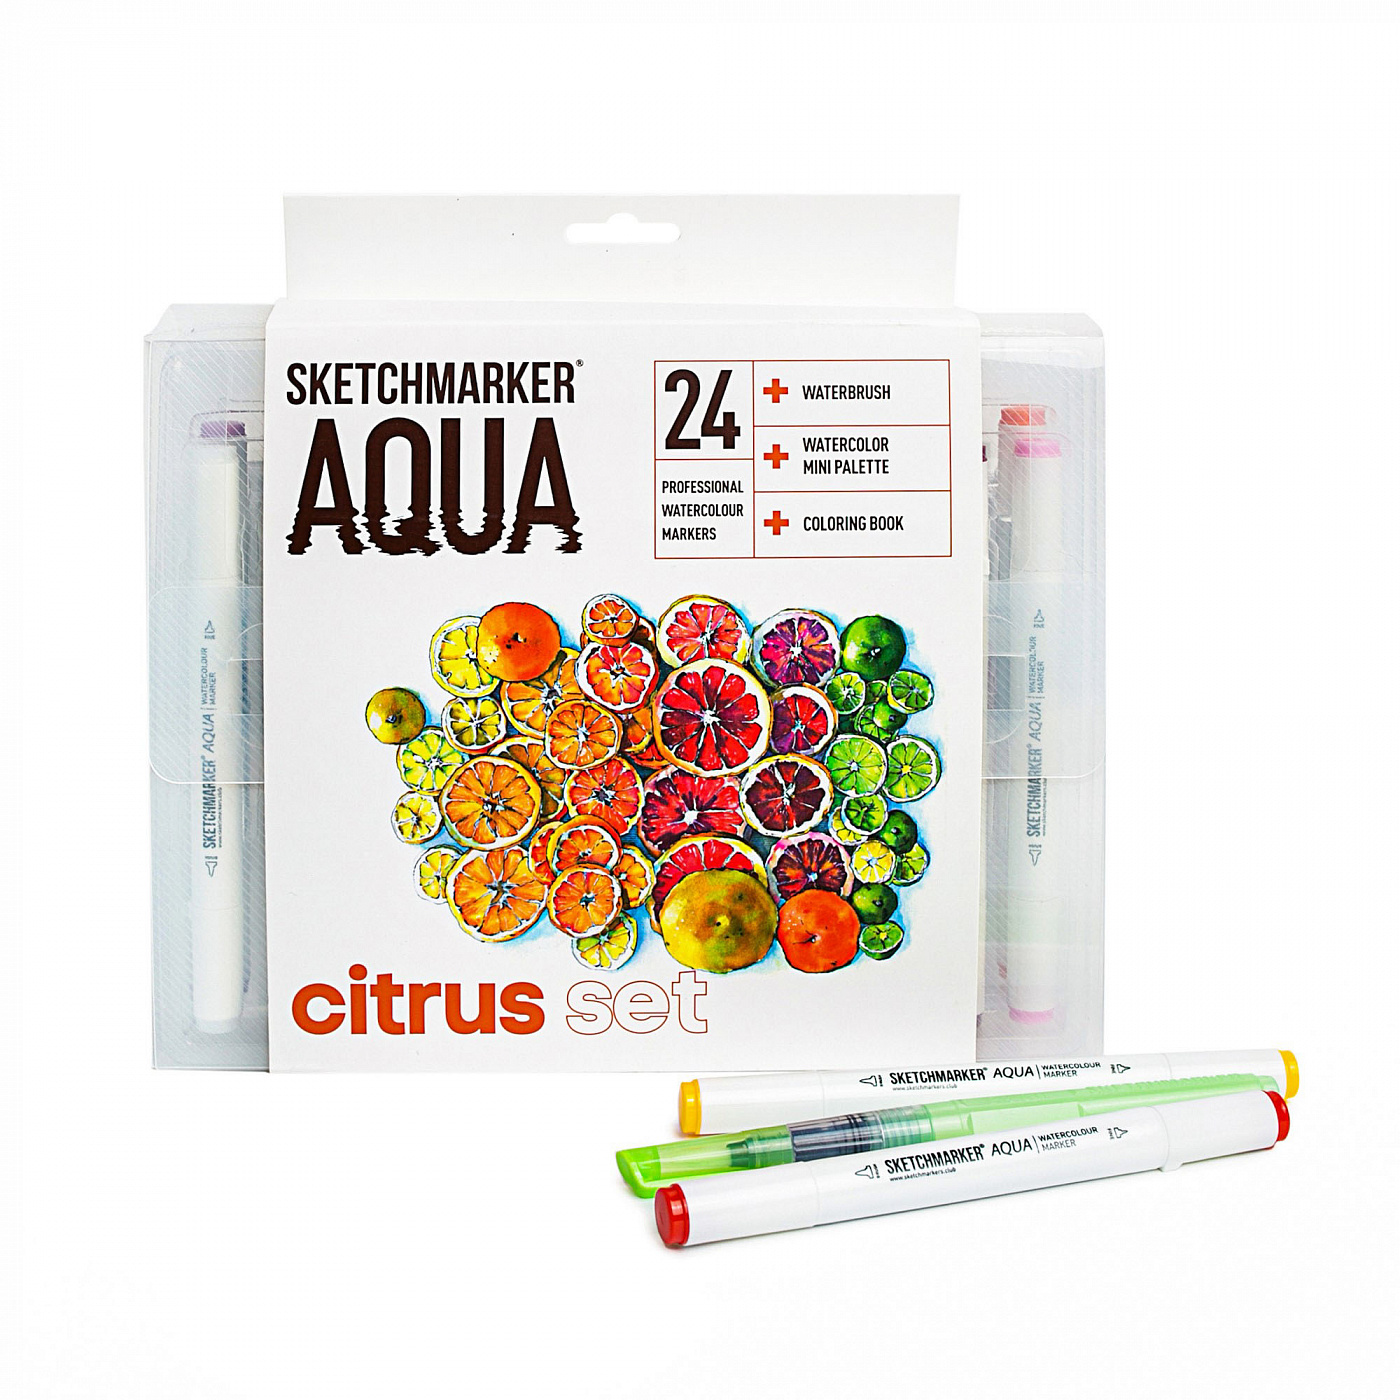    SKETCHMARKER Aqua Pro Citrus Set 24 